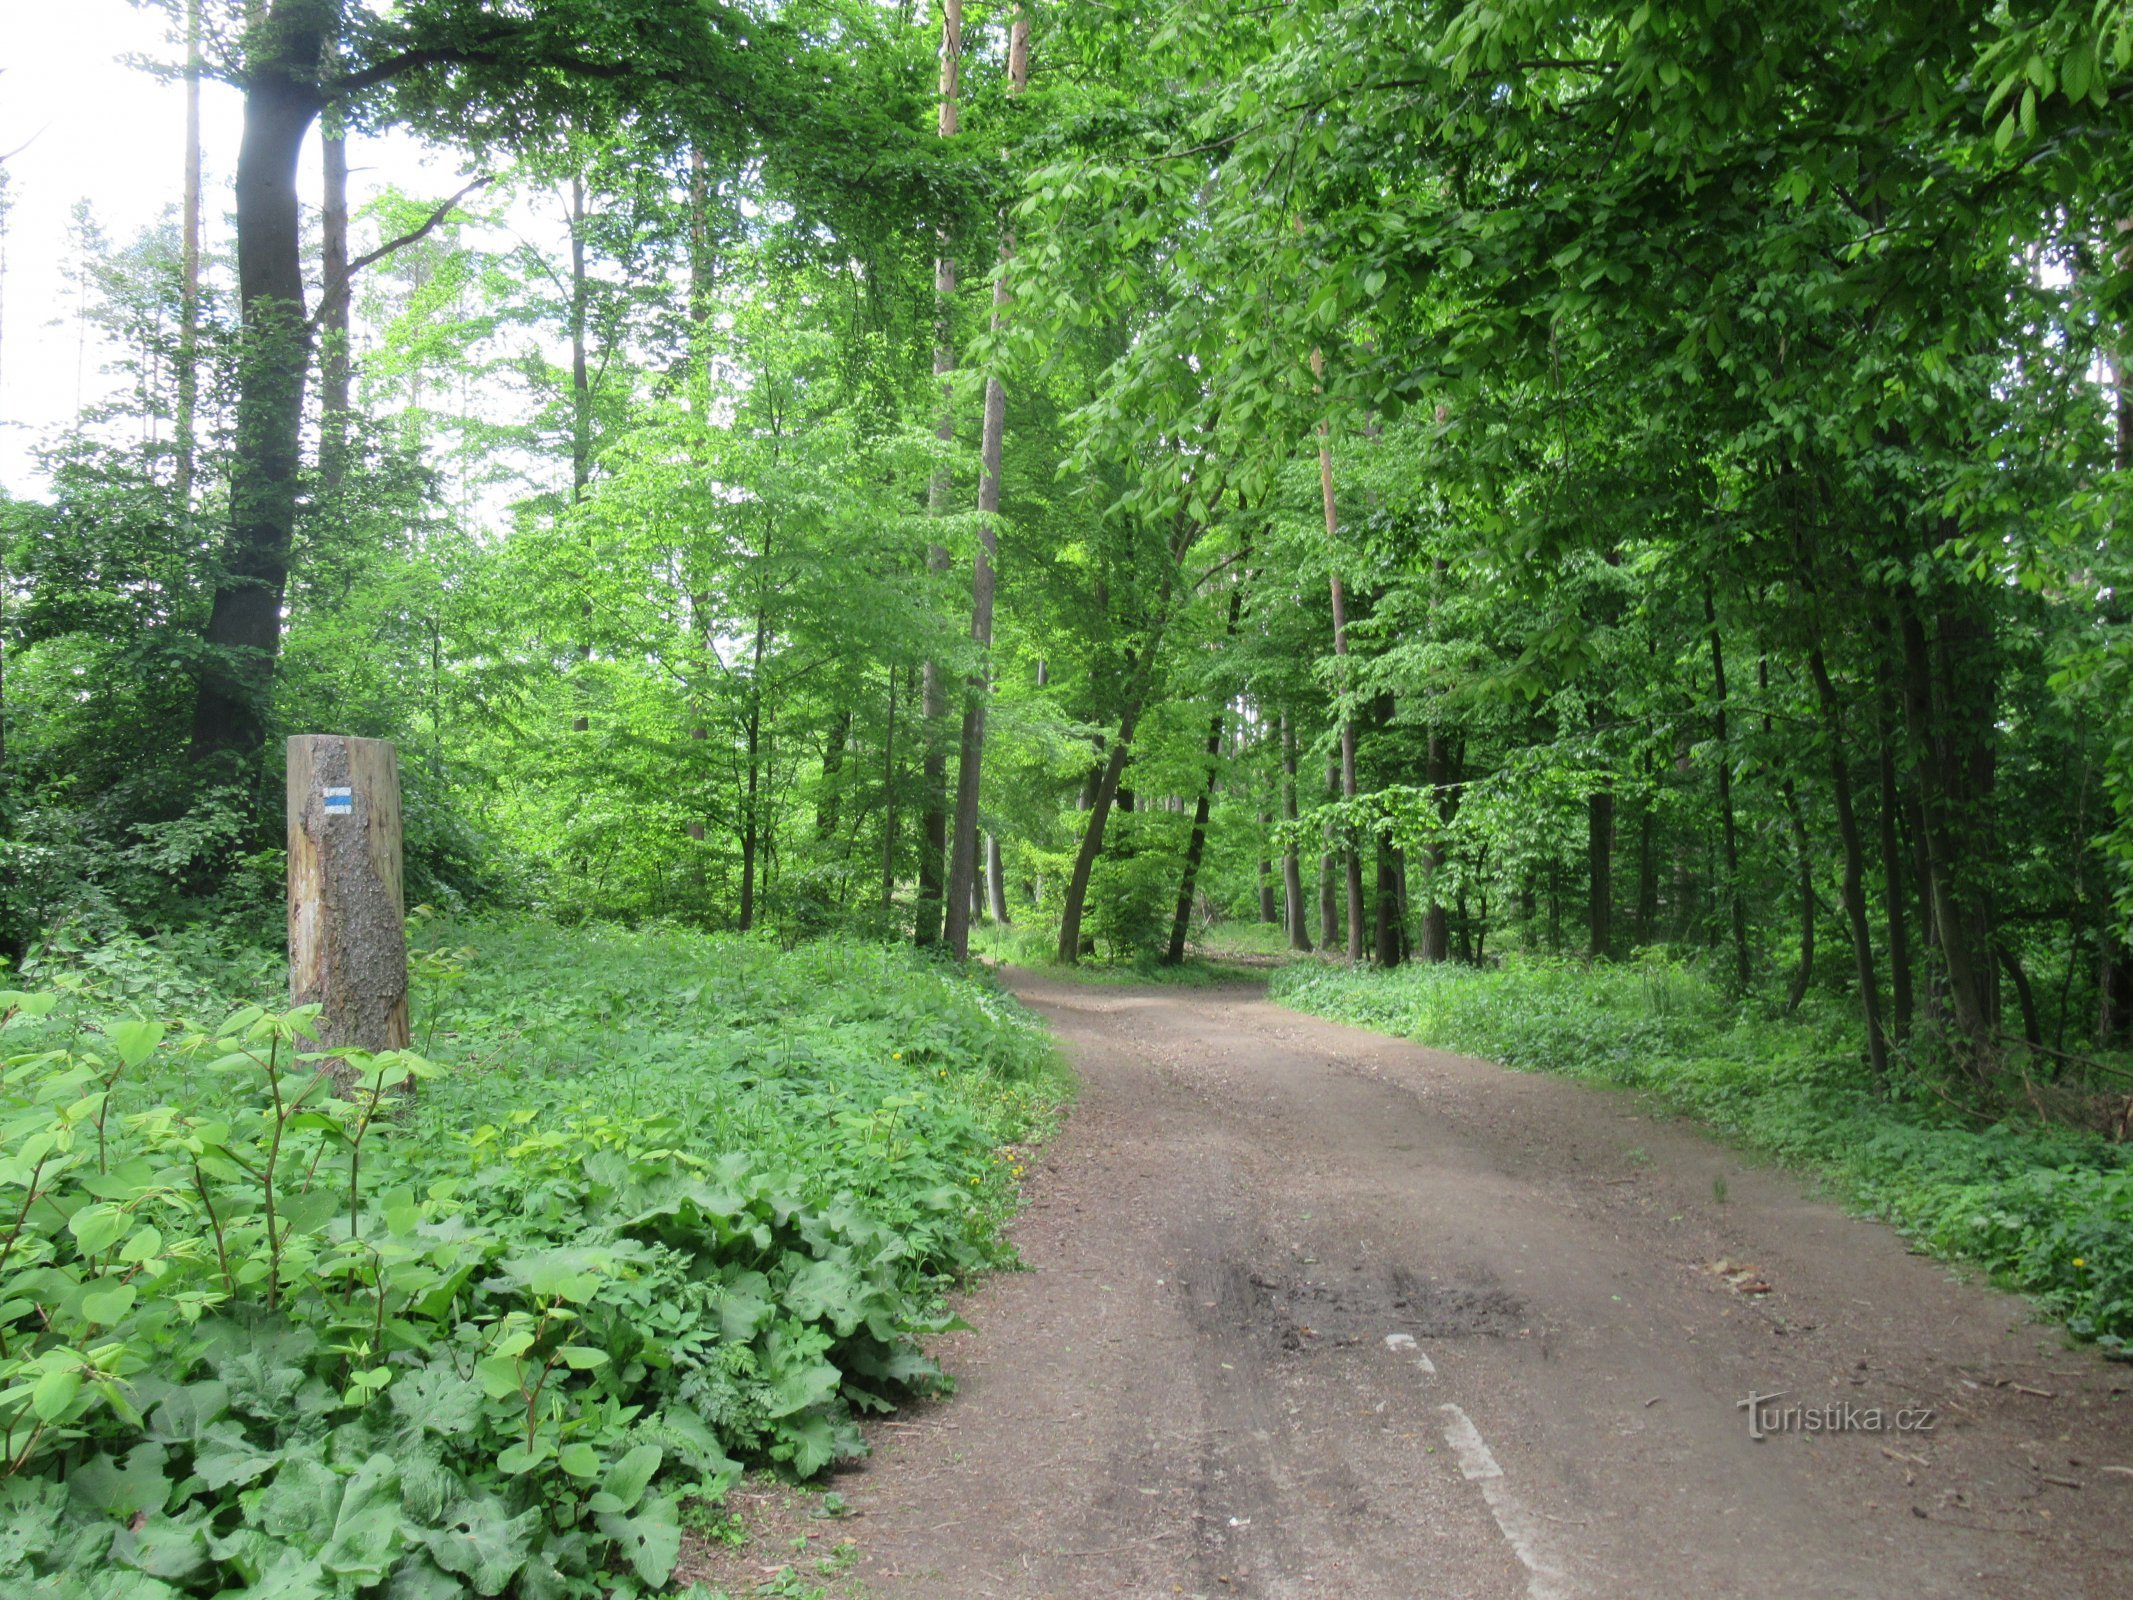 Η διαδρομή οδηγεί κυρίως μέσα από φυλλοβόλα δάση